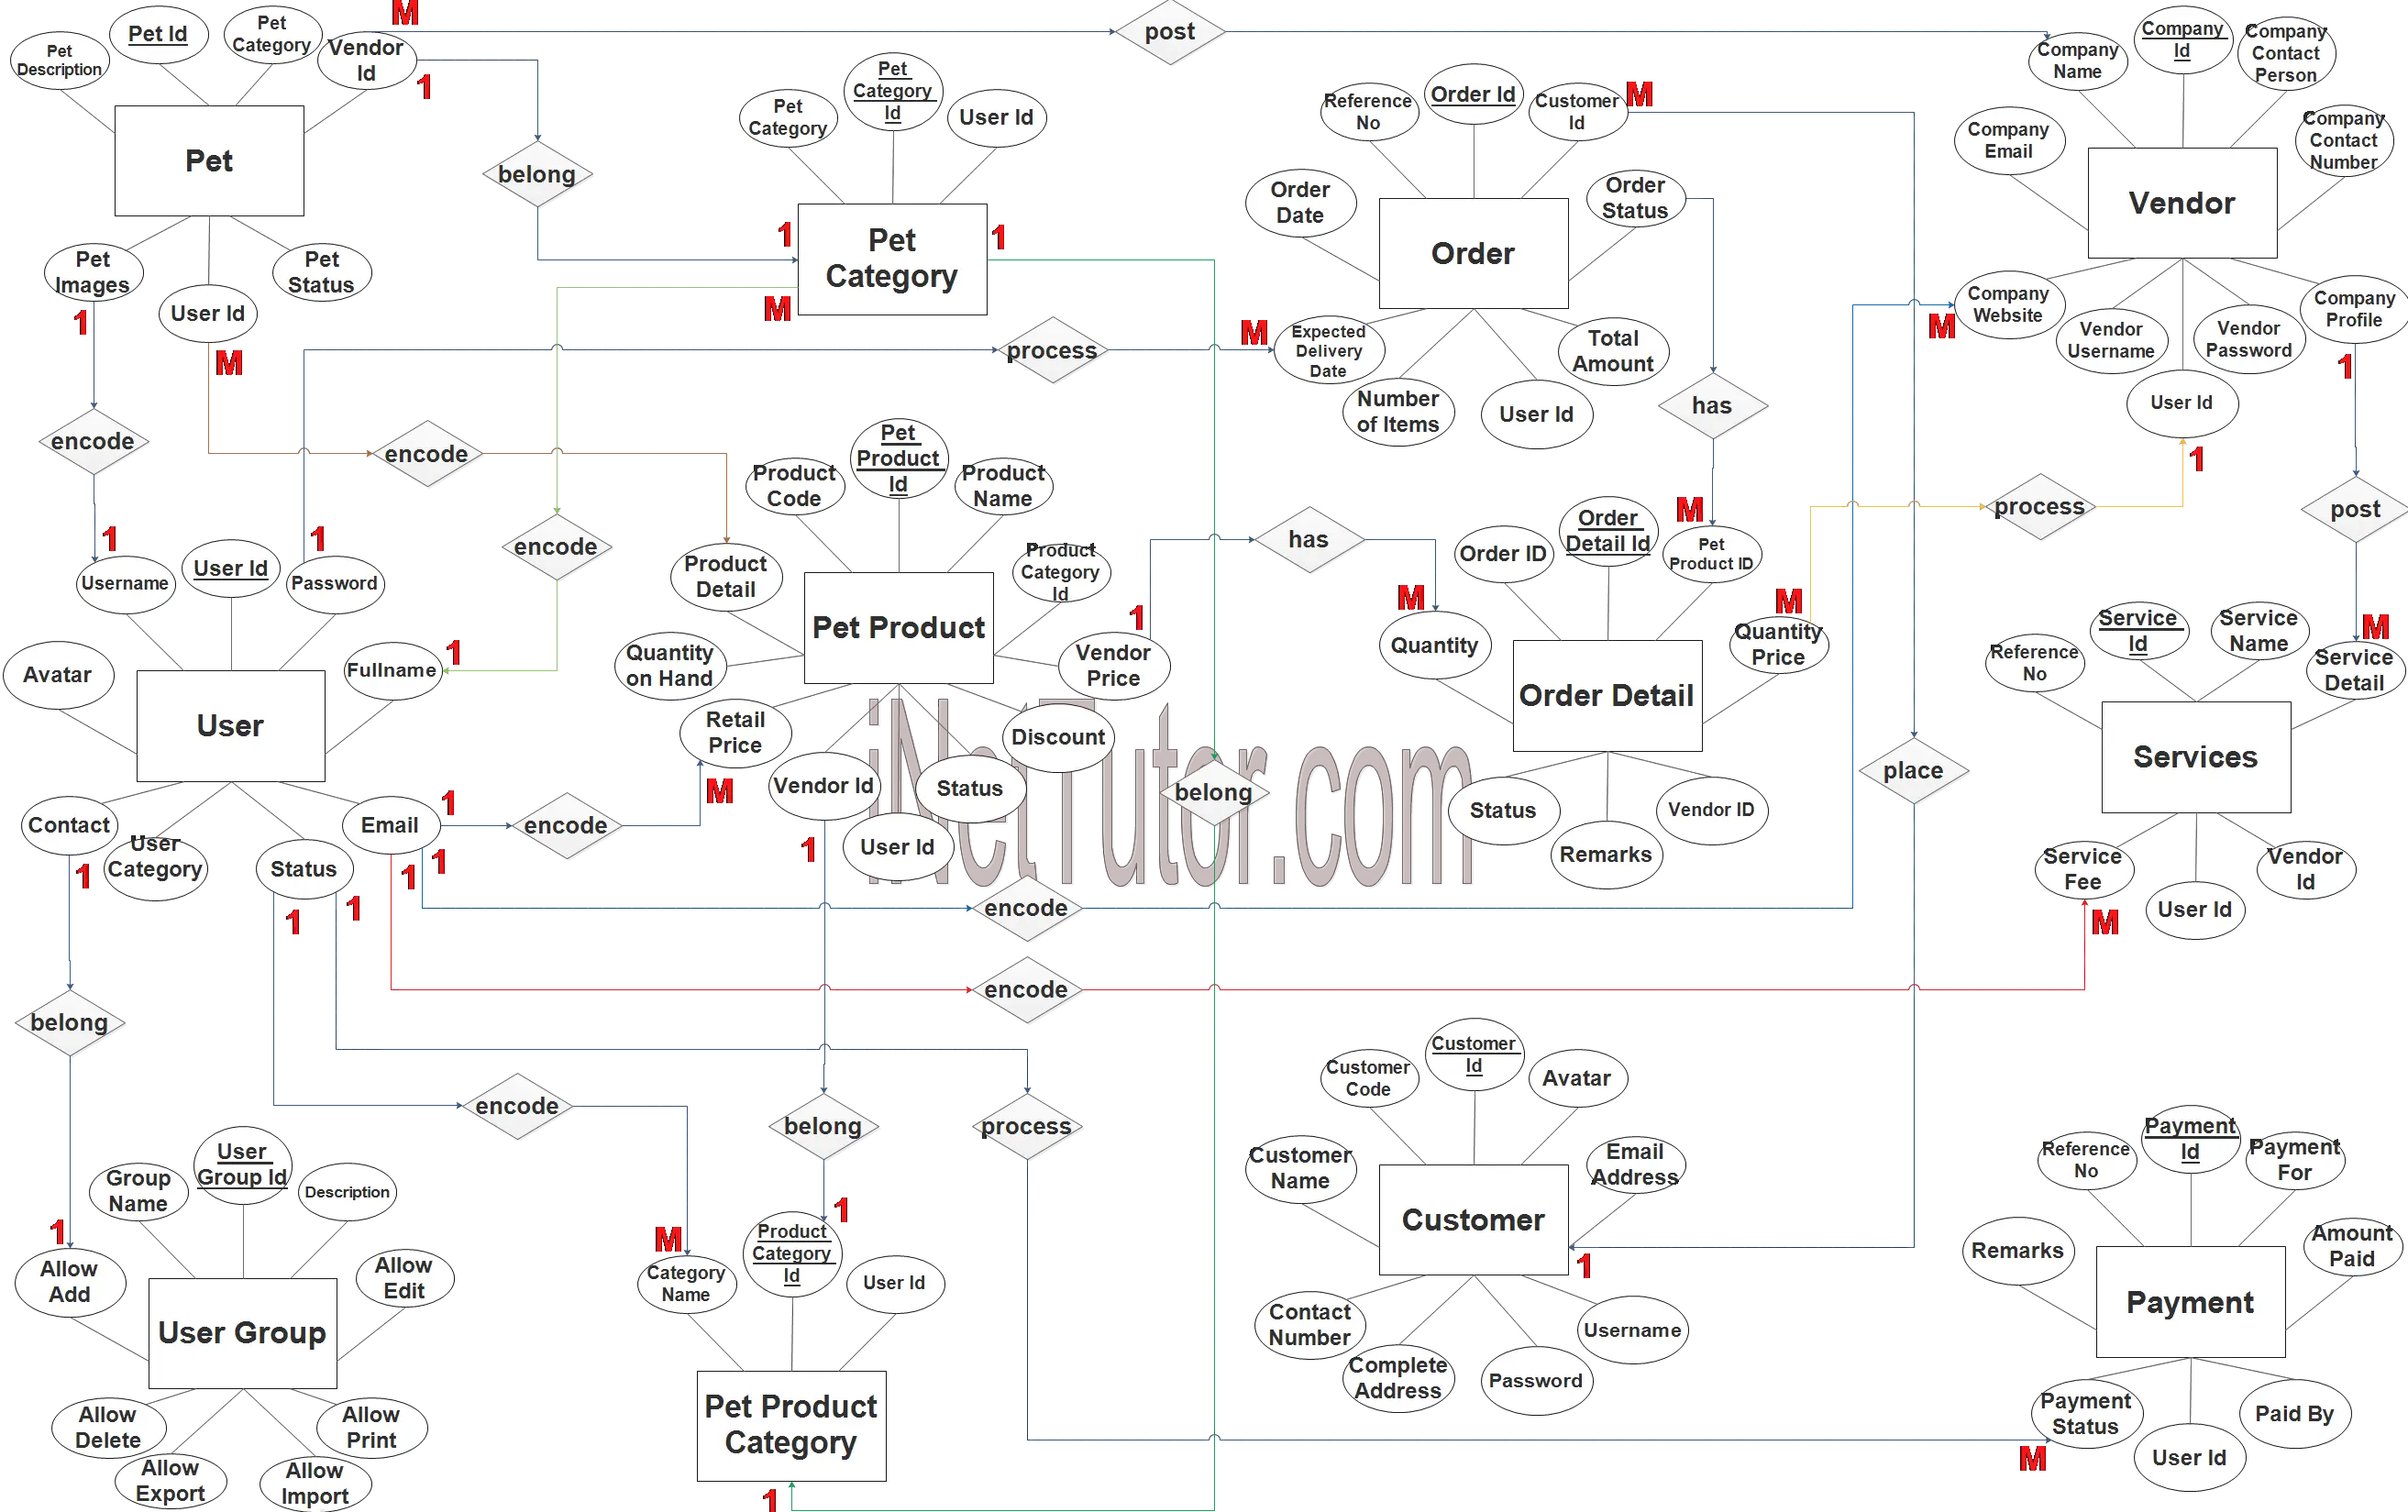 Pet Shop Management System ER Diagram - Step 3 Complete ERD